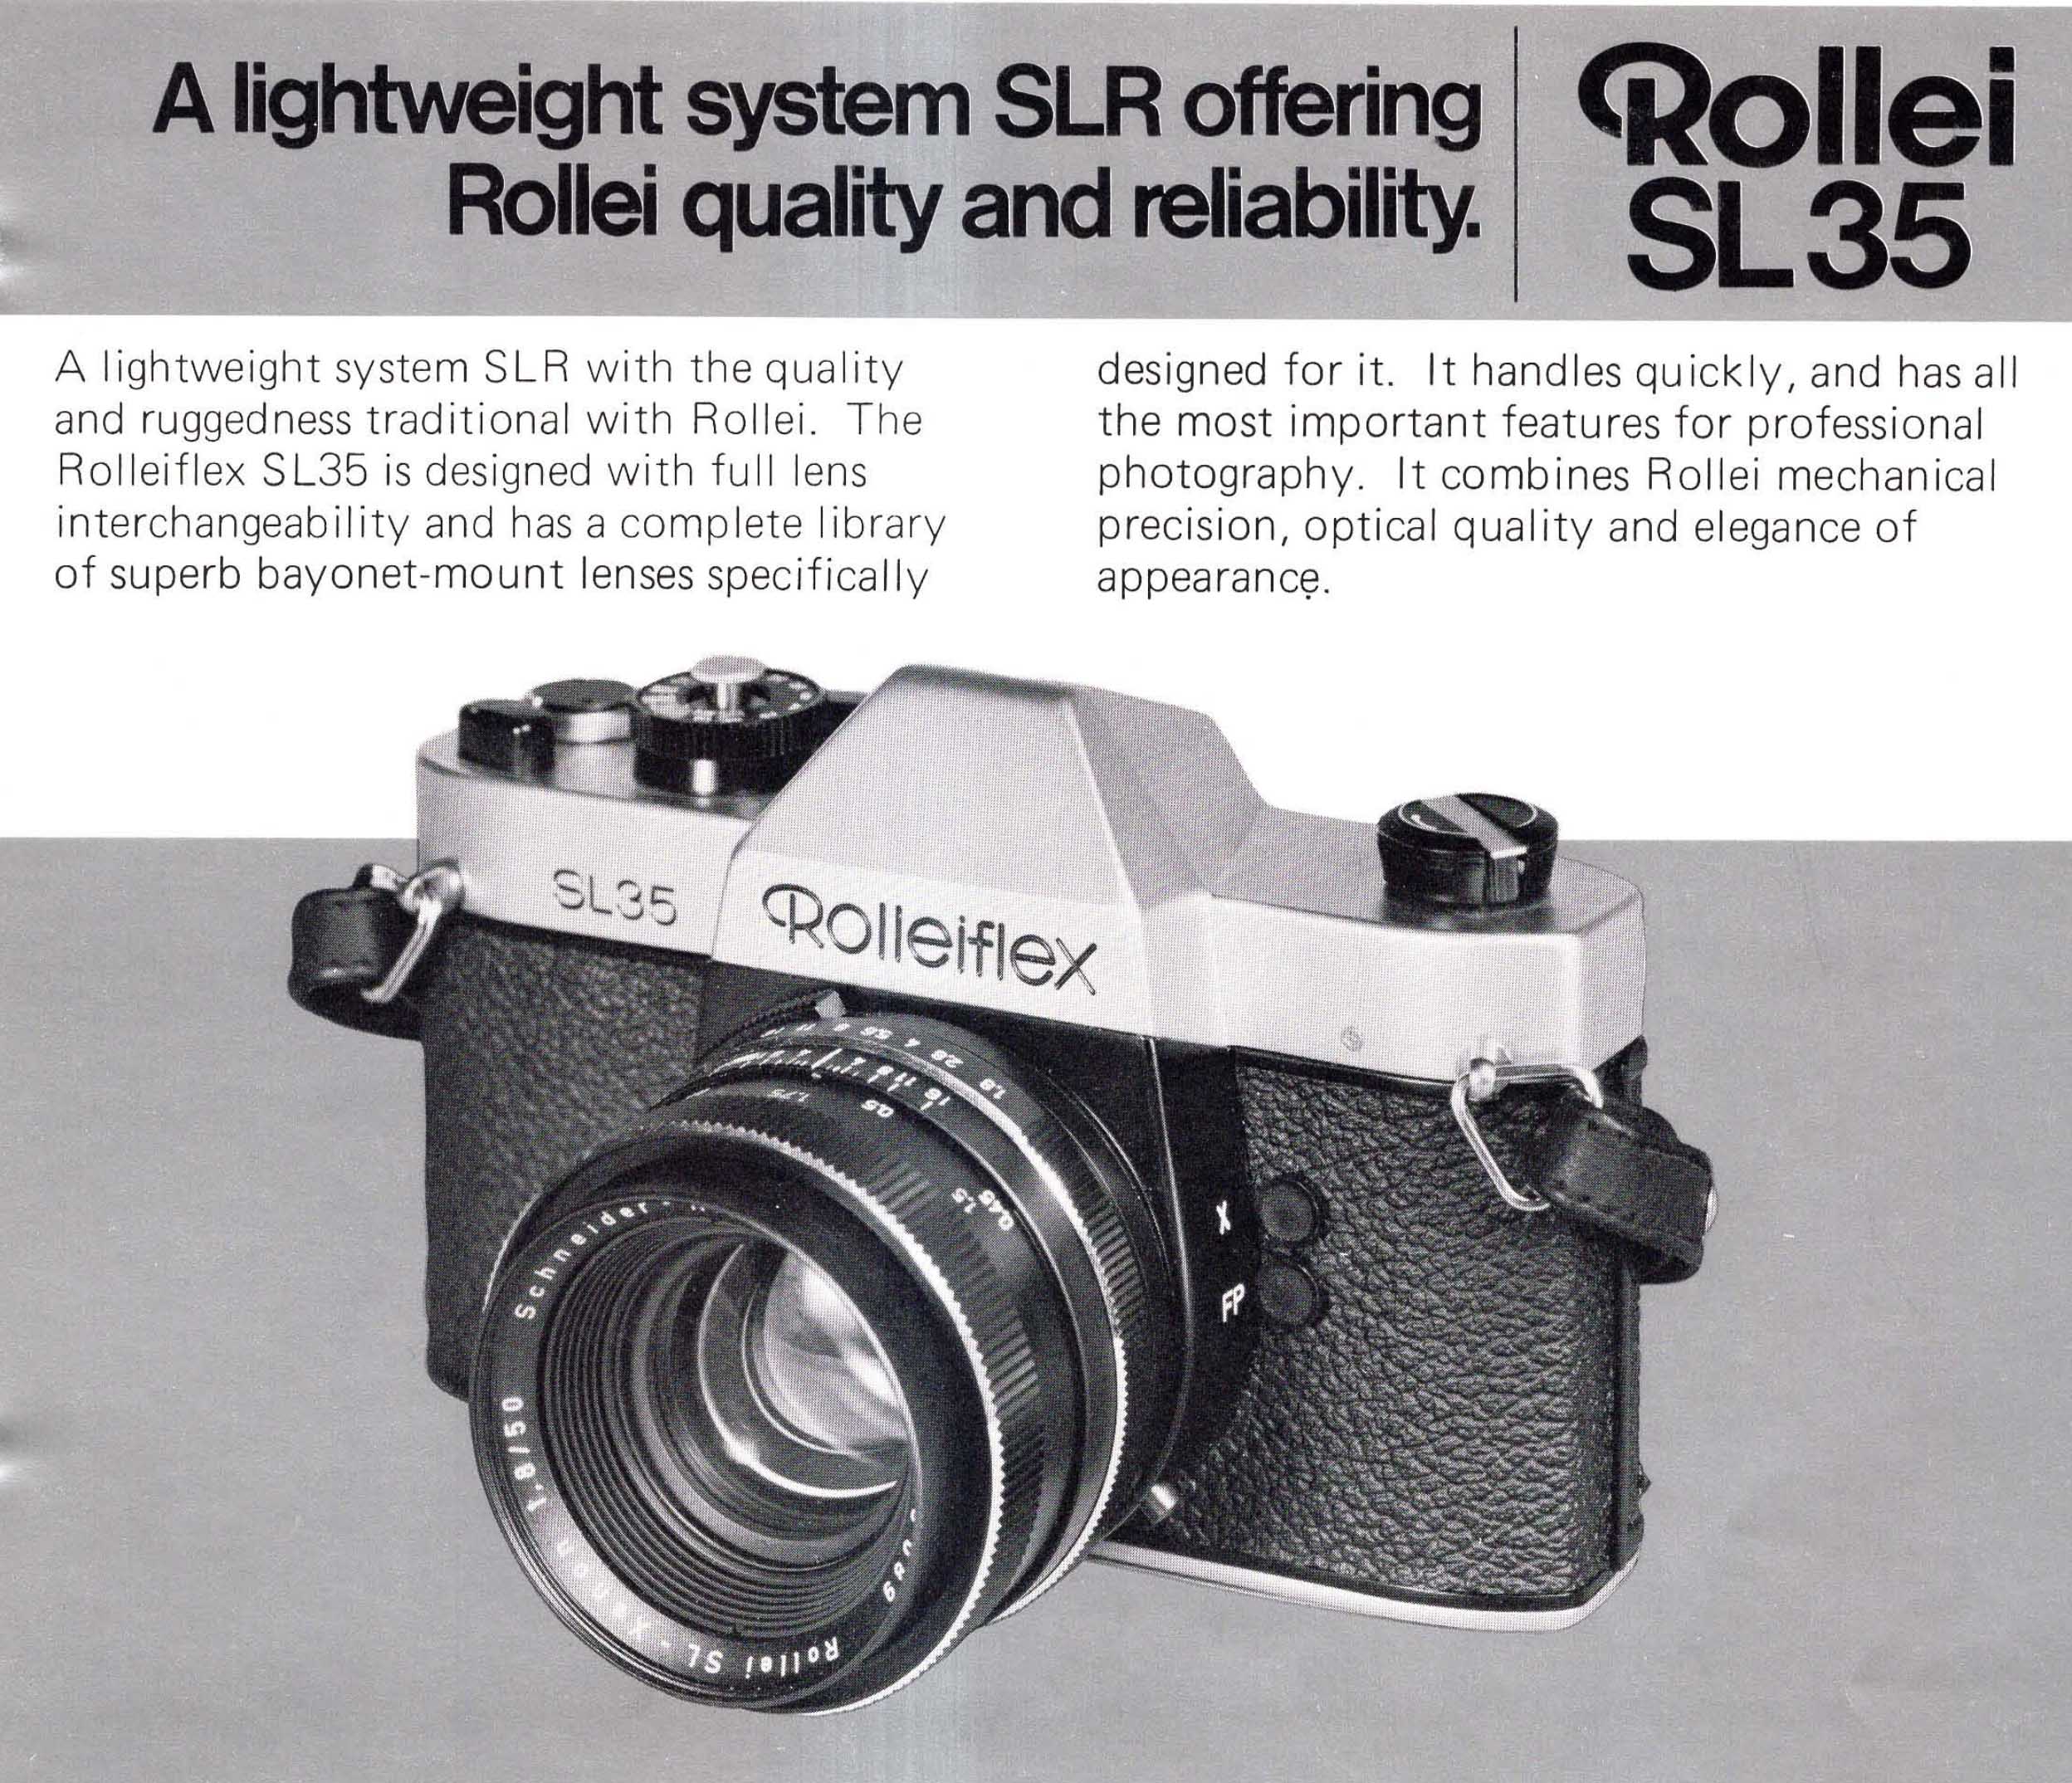 Rolleiflex SL35 with Schneider Kreuznach Rollei SL Xenon 50mm f1.8